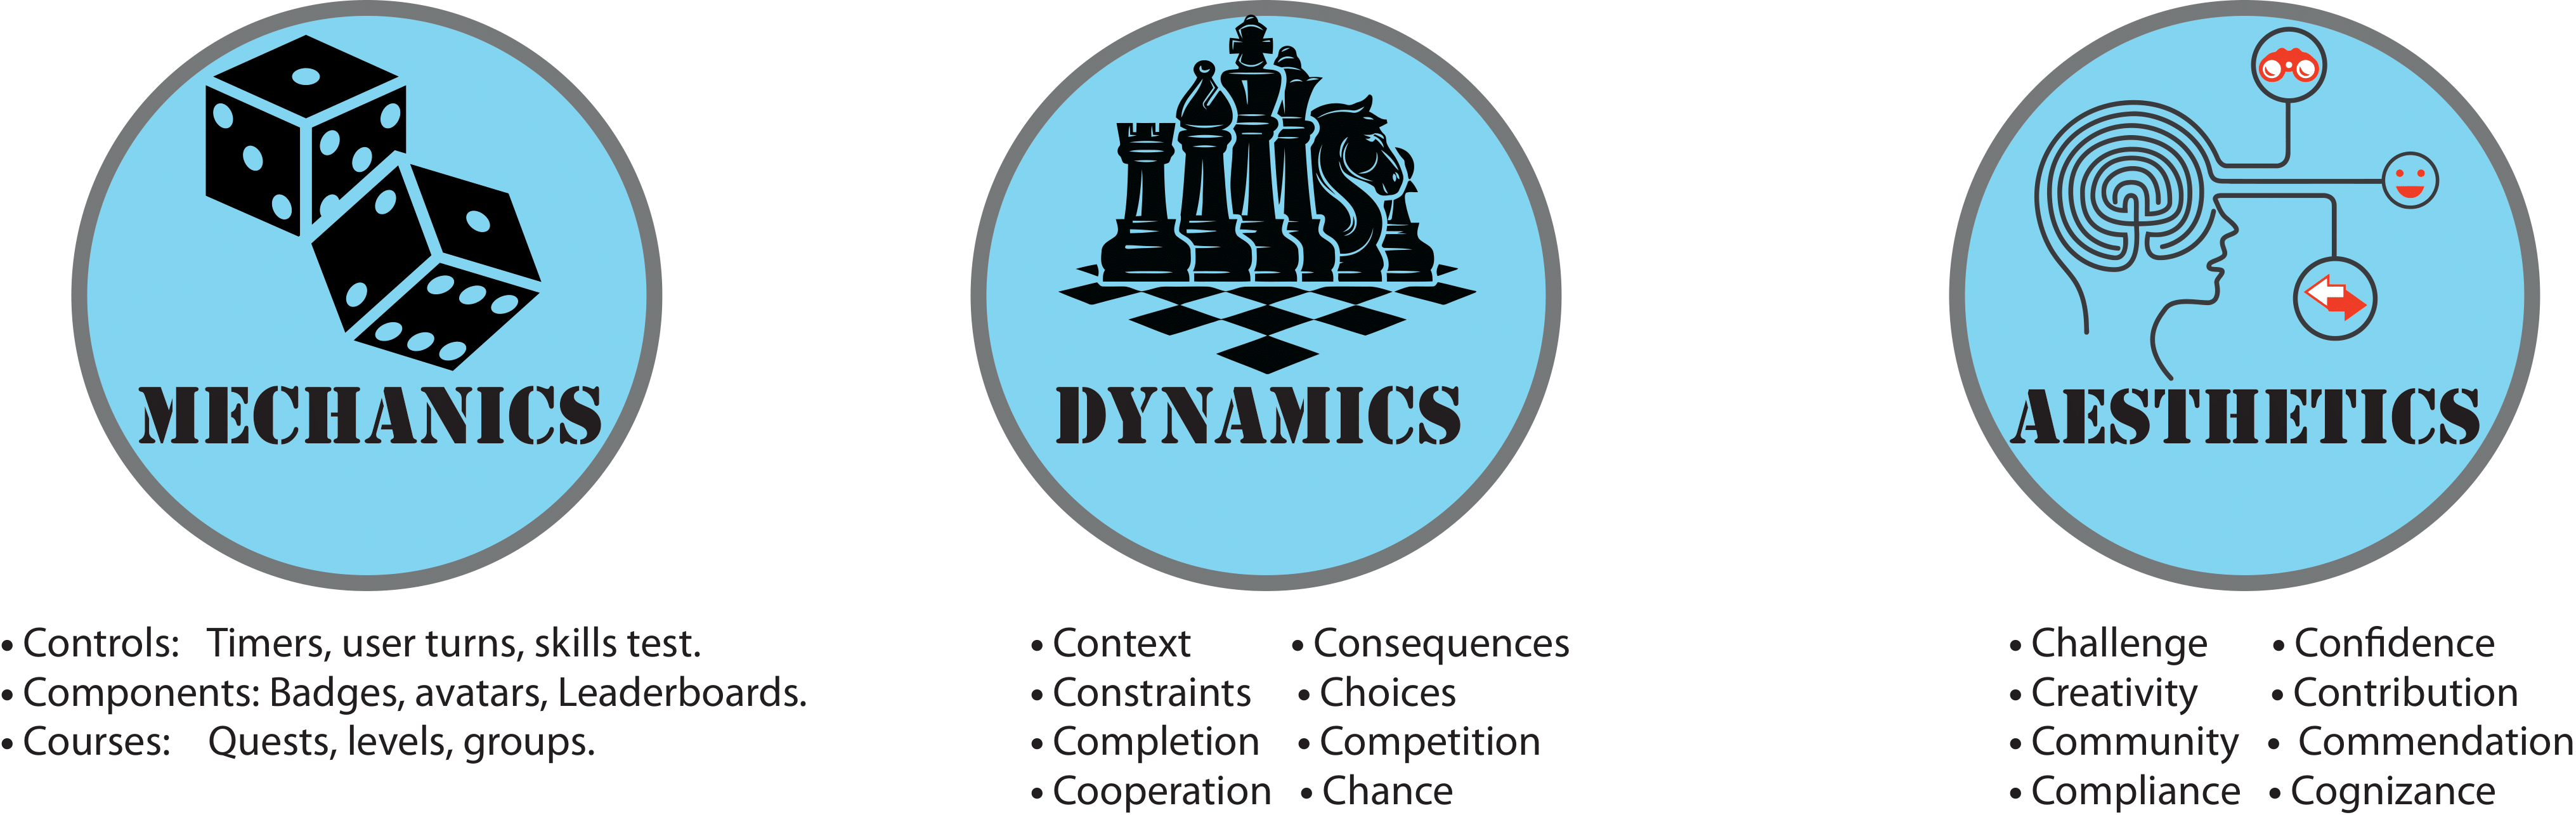 Mechanics-Dynamics-Aesthetics (MDA) framework elements